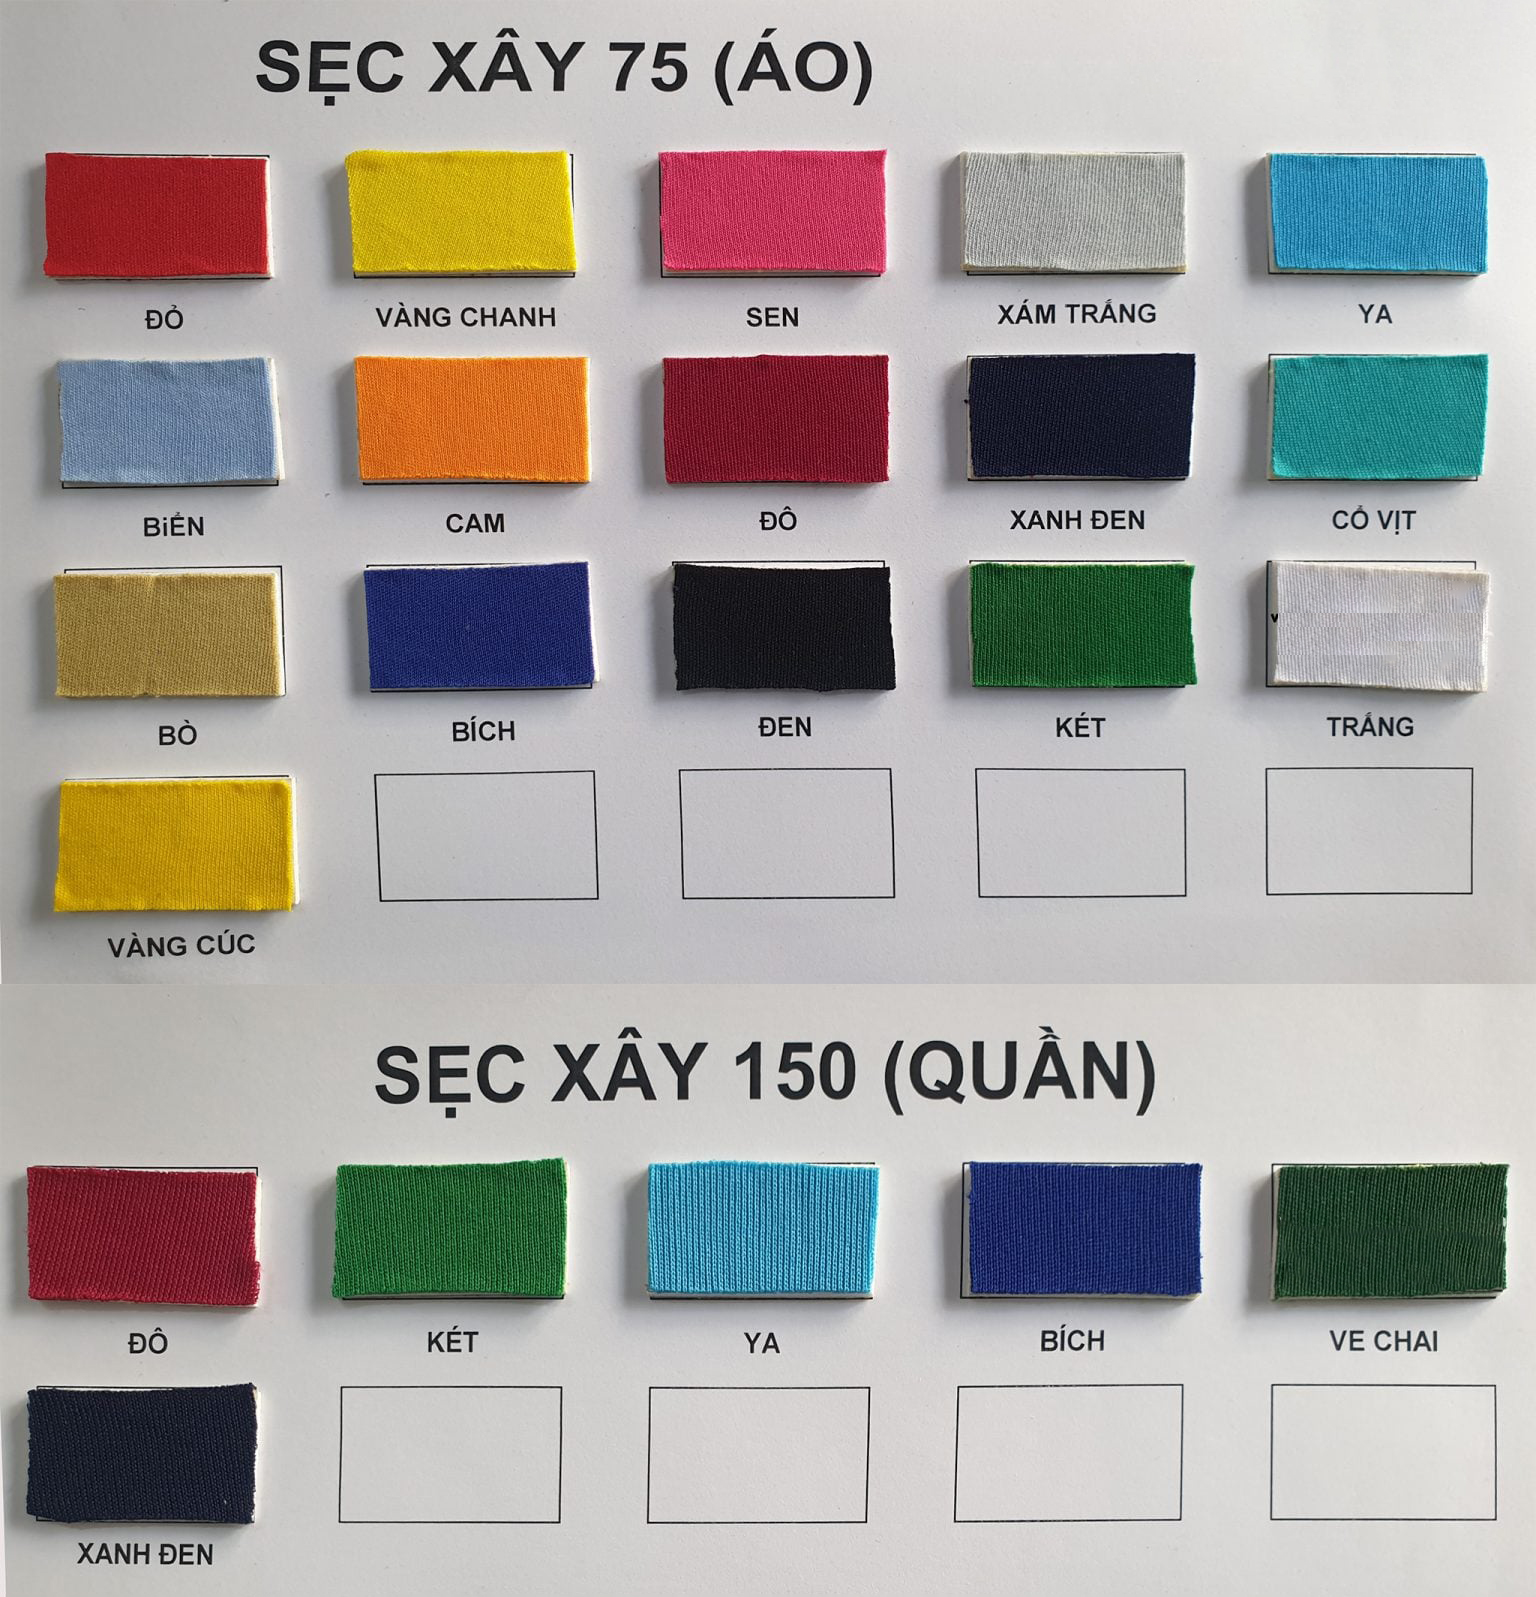 Vải Xecxay 75 - 150 (còn gọi là vải thun 2 chiều) là loại vải được dệt từ chất liệu POLYESTE. Chuyên dùng để may áo thể dục cho học sinh, làm lót đầm - váy thời trang, khăn trải bàn trong các sự kiện.